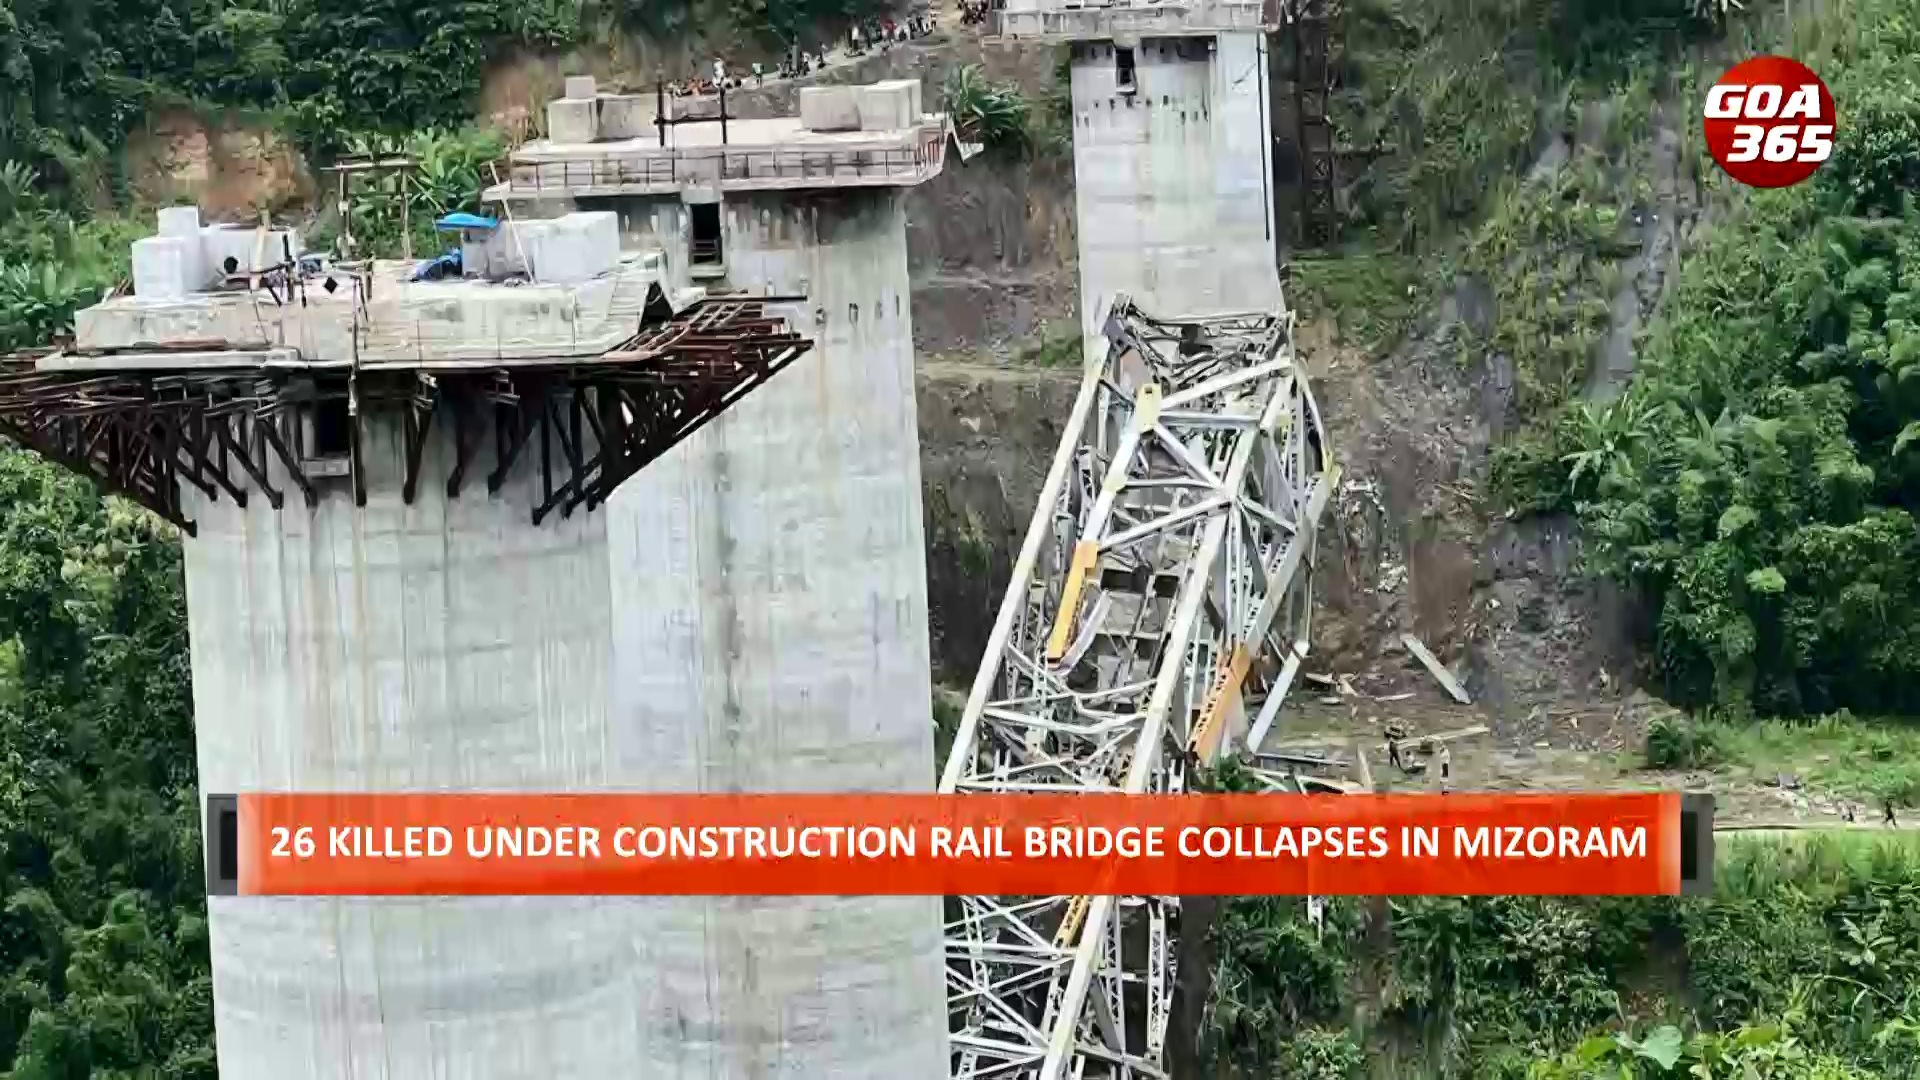 MIZORAM: At least 26 killed in railway bridge collapse  